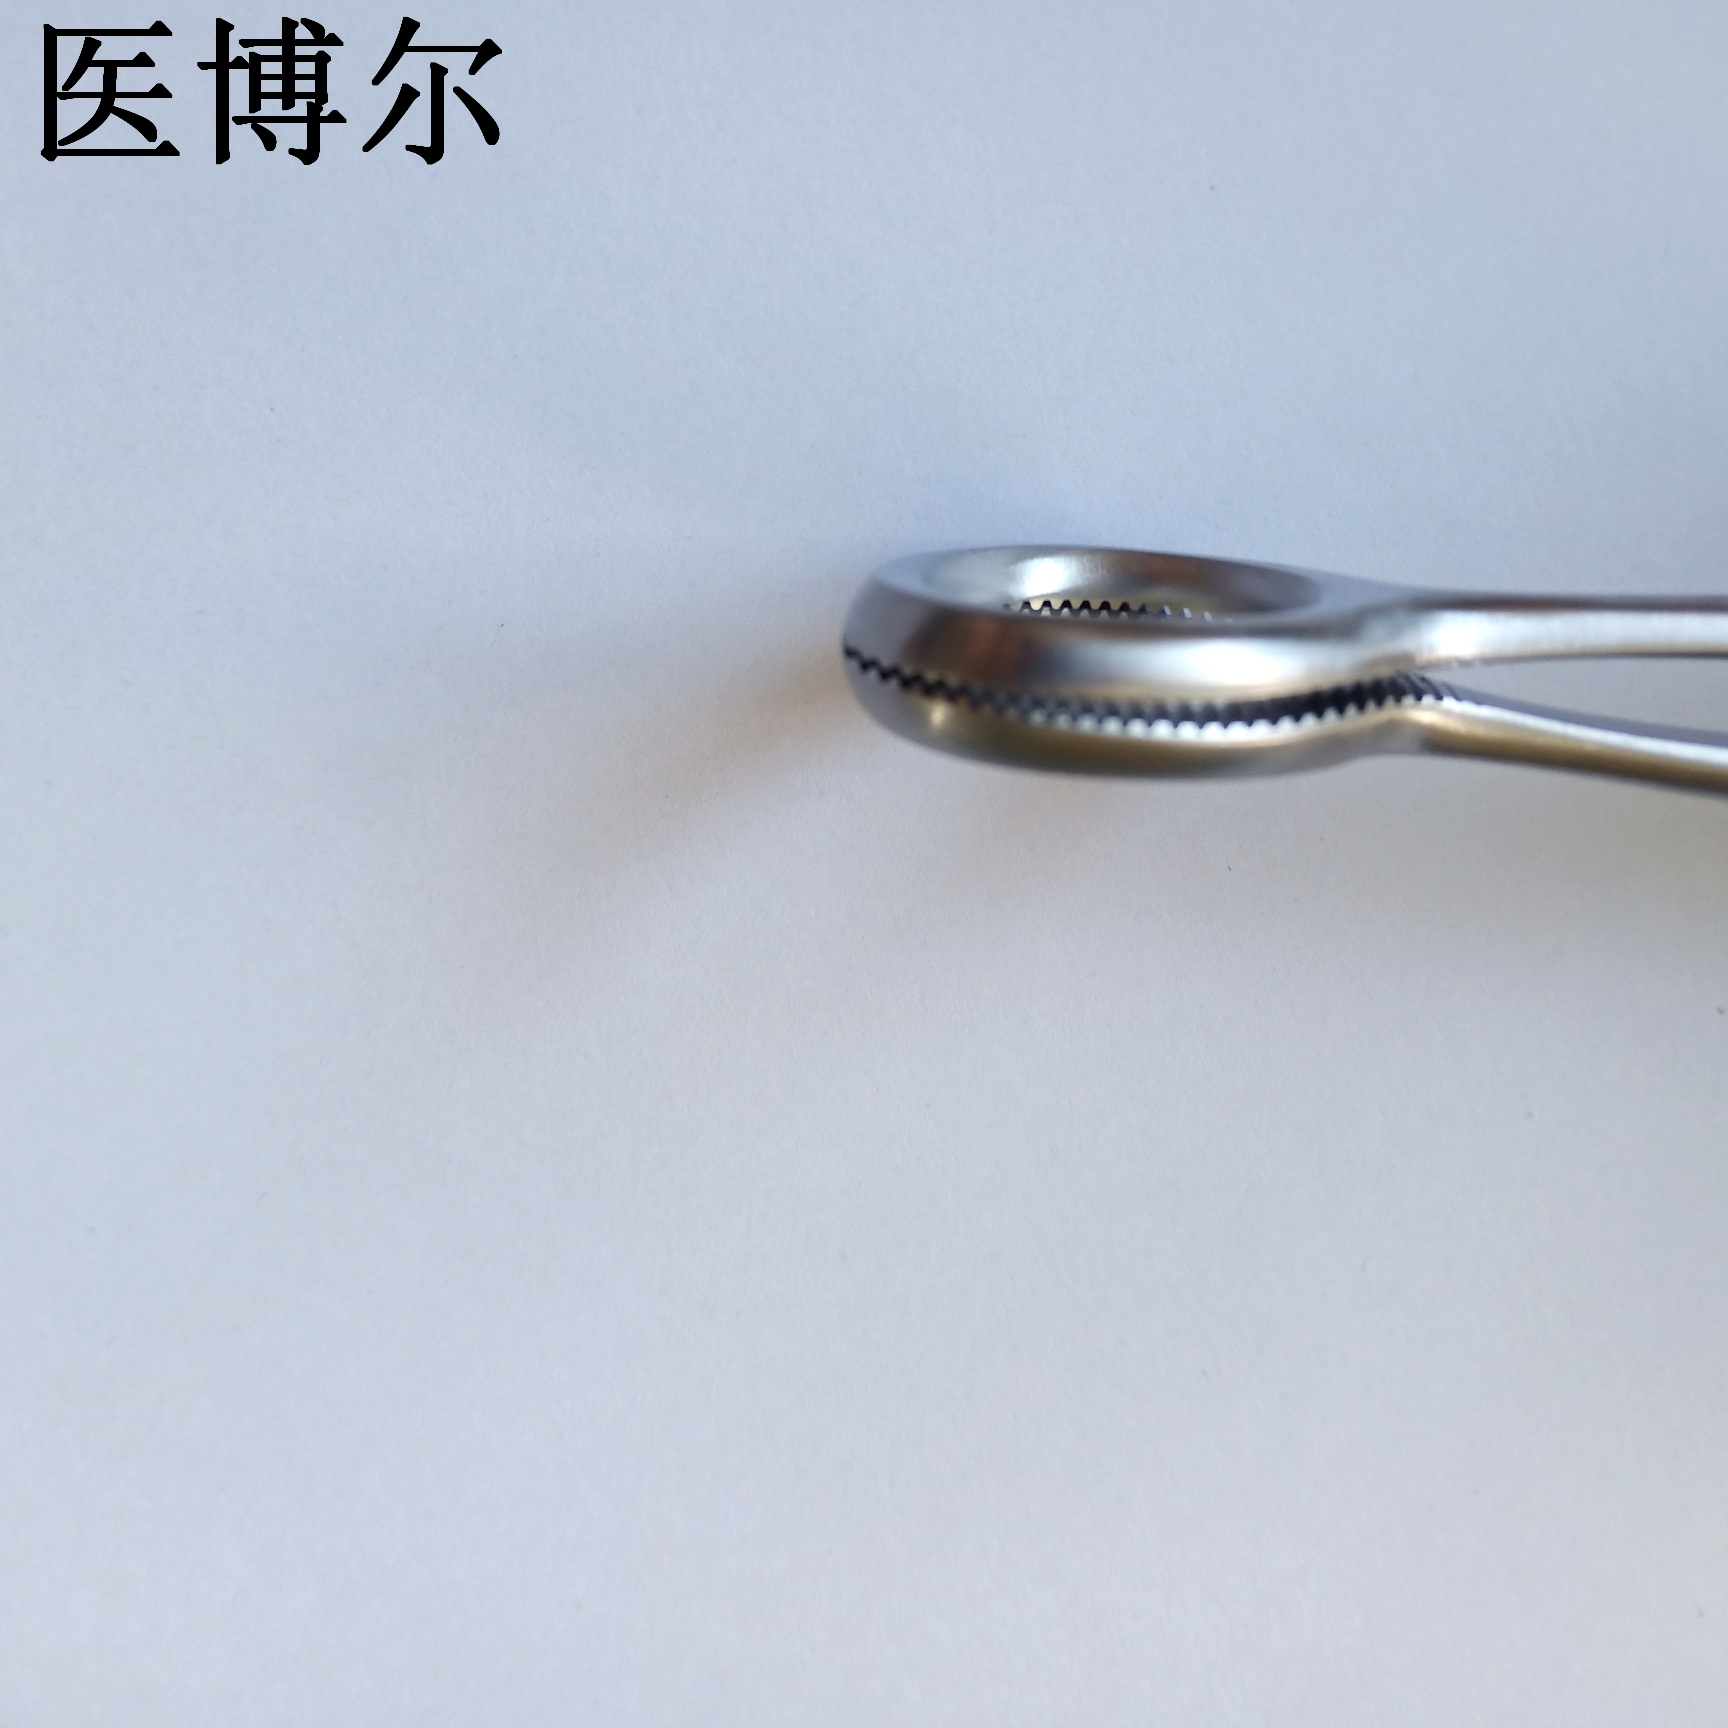 20cm舌钳 (6)_看图王.jpg